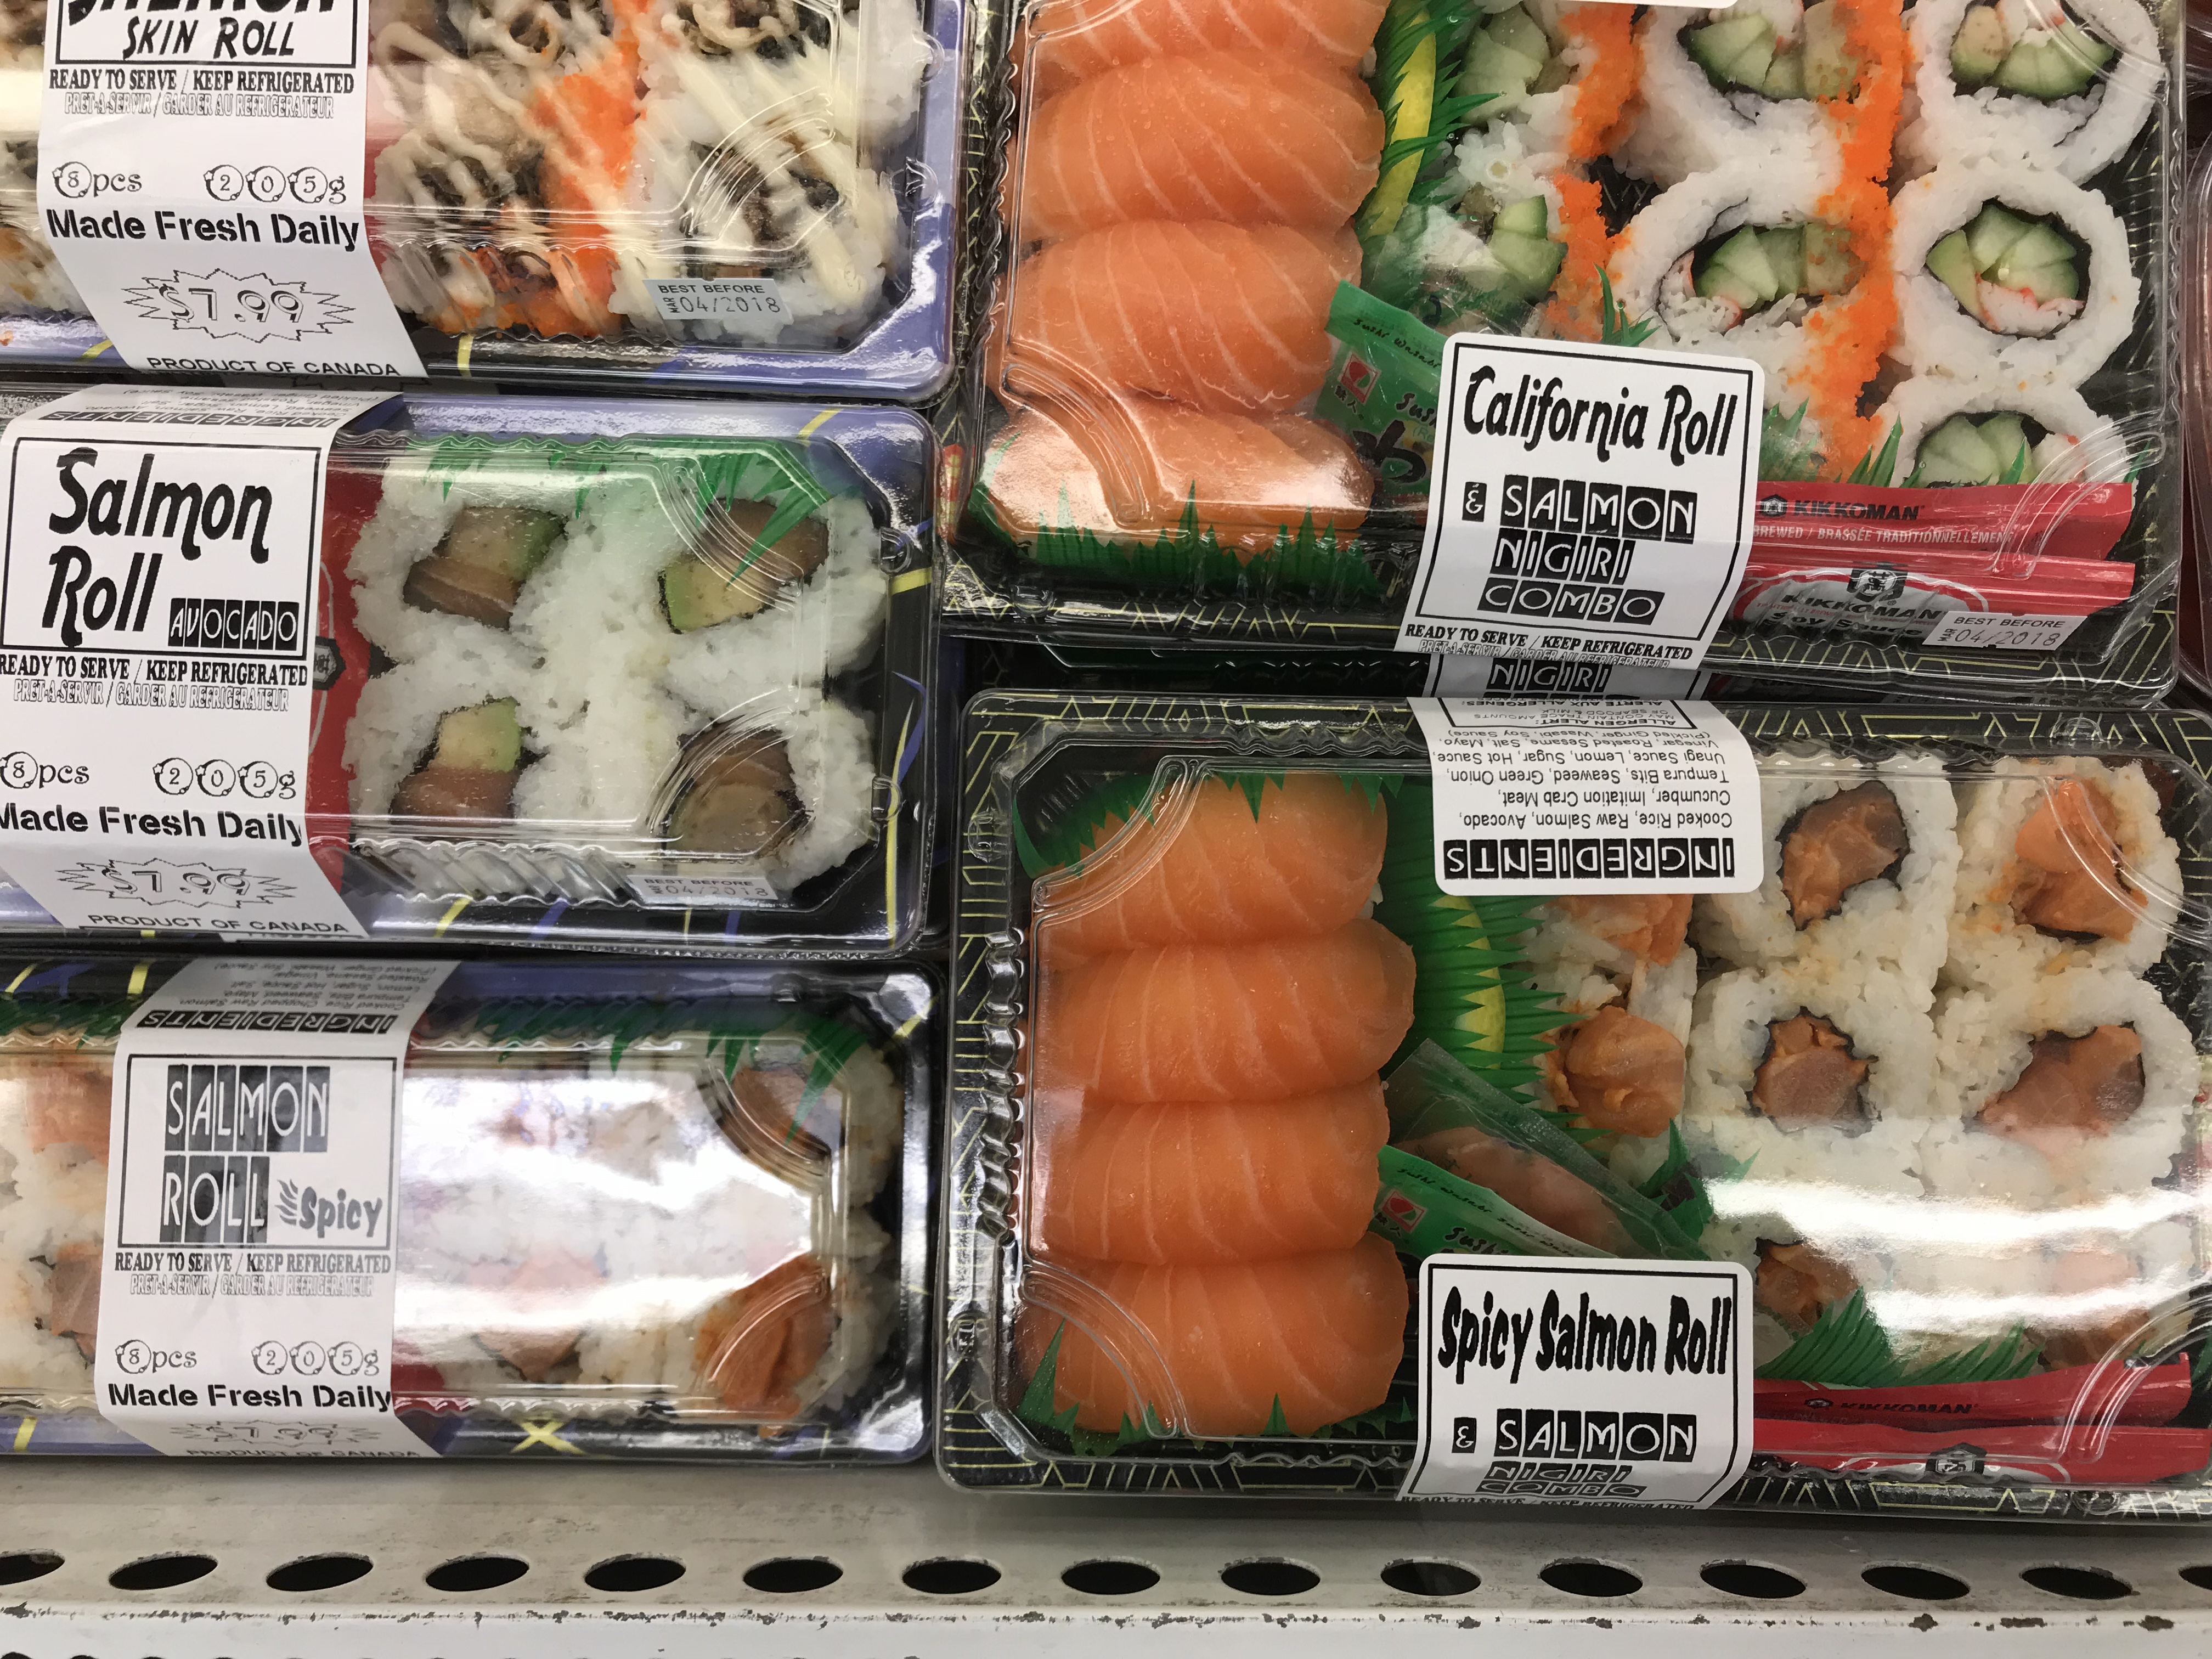 海外で人気なお寿司の種類は 日本じゃ見られない奇妙な寿司たち 海外の寿司事情を考える 飛行機旅行のゼミナール